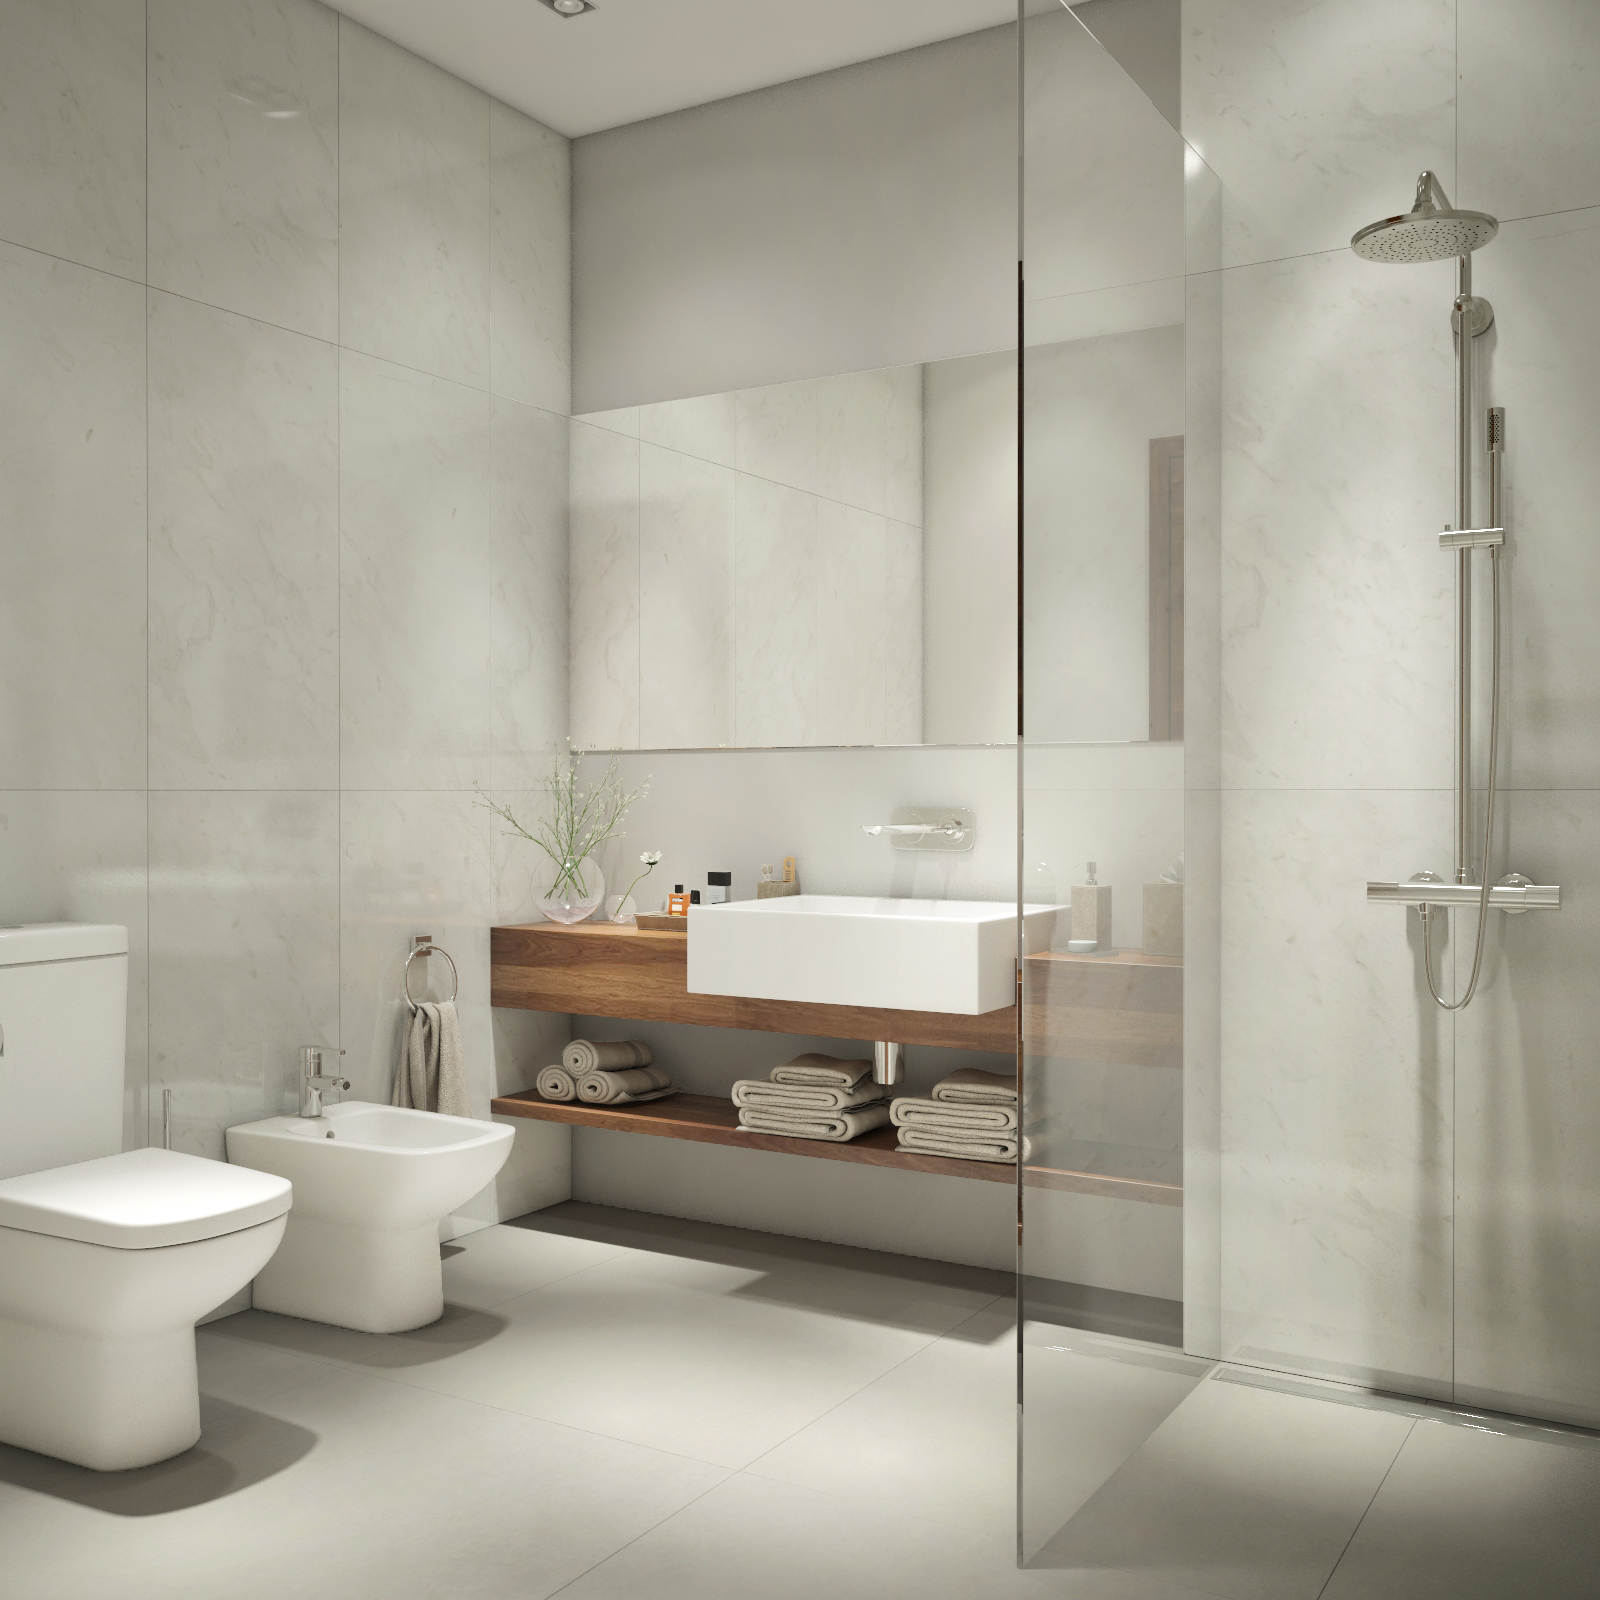 В ванной задействованы все те же материалы, что и в остальных помещениях -натуральный мрамор, американский орех и светлая, практически белая, влагостойкая краска для стен.